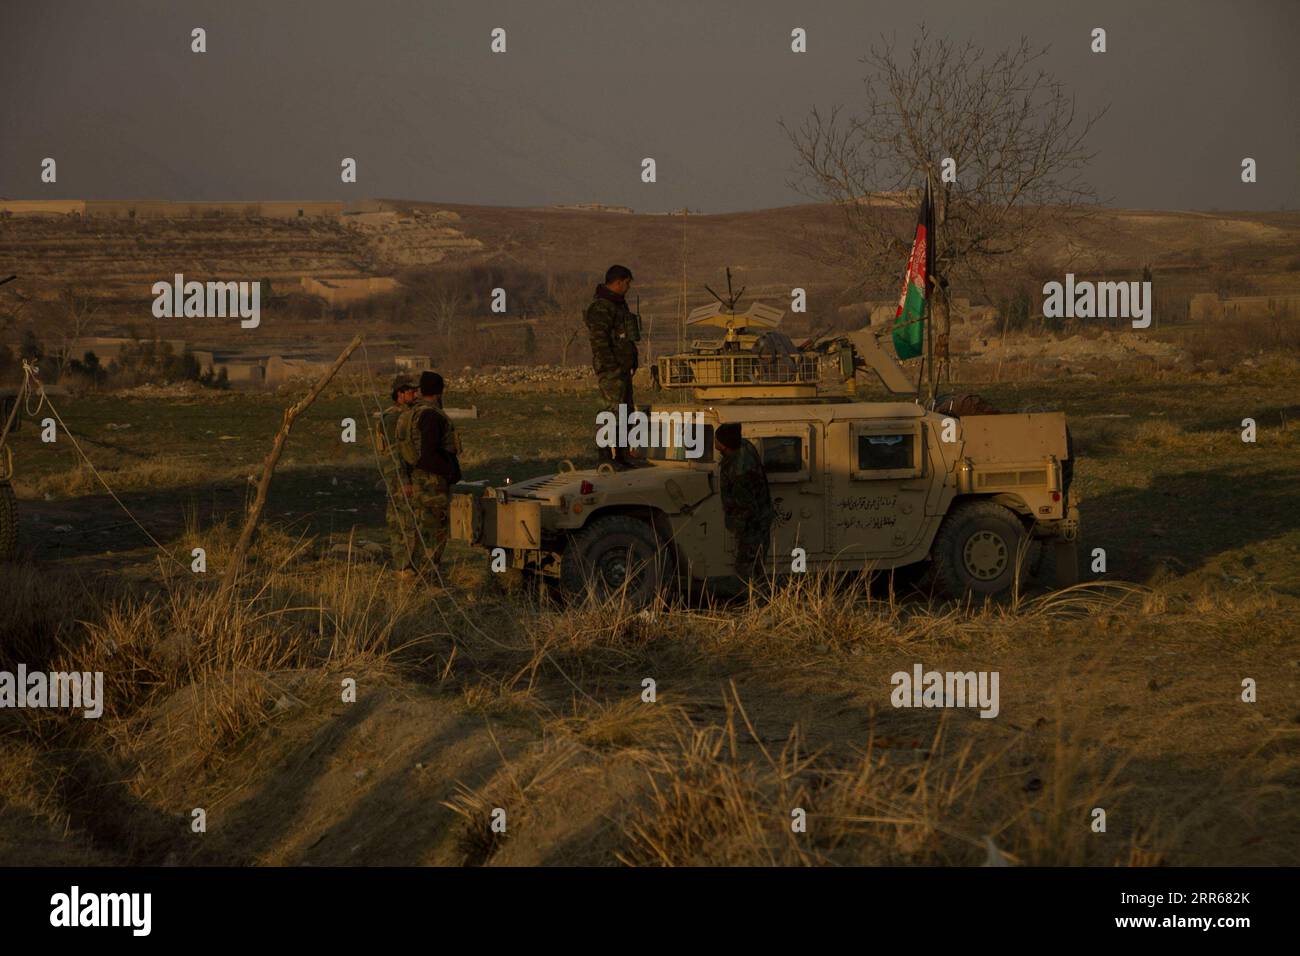 210130 -- JALALABAD, le 30 janvier 2021 -- des membres des forces de sécurité afghanes sont vus sur le site d'une voiture piégée près d'une base militaire dans le district de Shirzad, dans la province de Nangarhar, Afghanistan, le 30 janvier 2021. Huit soldats ont été tués alors qu'une voiture piégée a explosé à côté d'une base militaire dans le district de Shirzad dans la province orientale de Nangarhar en Afghanistan samedi, a déclaré un communiqué du gouvernement provincial publié ici. Photo de /Xinhua AFGHANISTAN-NANGARHAR-VOITURE PIÉGÉE SaifurahmanxSafi PUBLICATIONxNOTxINxCHN Banque D'Images